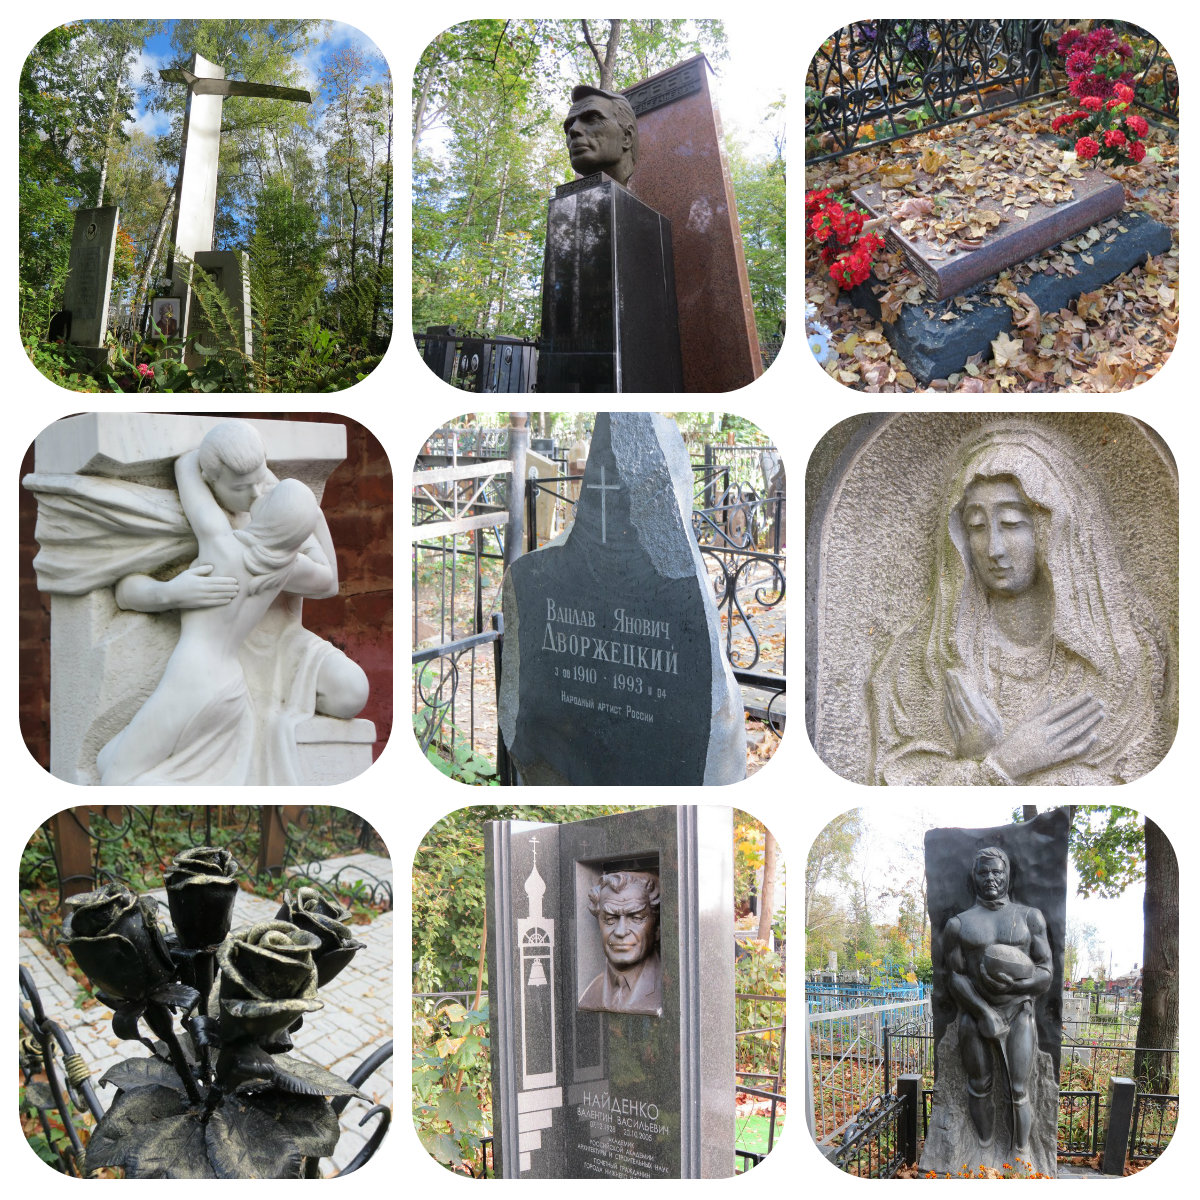 Бугровское кладбище Нижний могилы знаменитостей